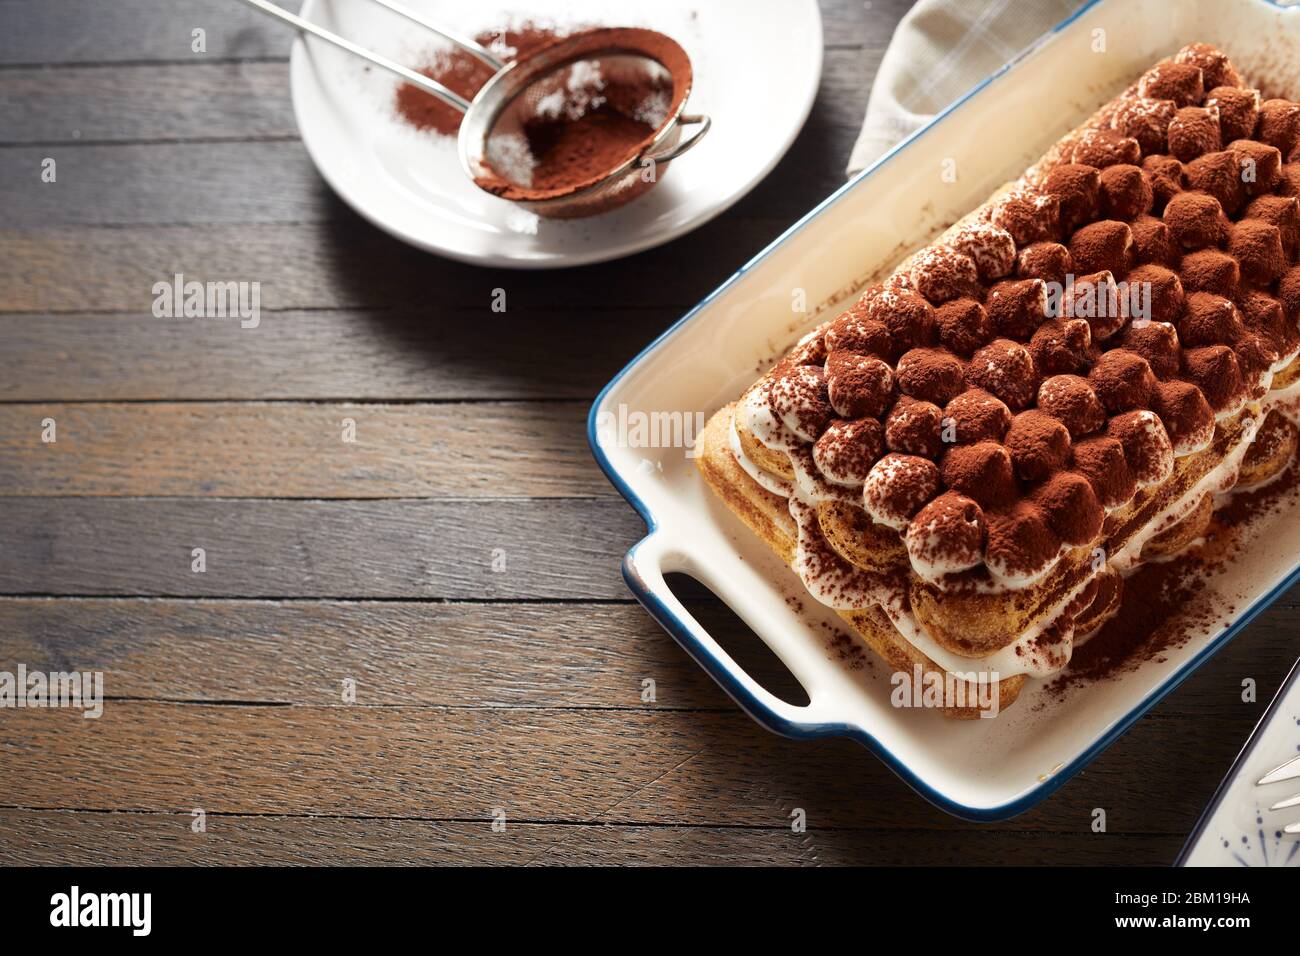 Délicieux dessert italien tiramisu avec fromage marscapuone et biscuits de boudoir parsemés de cacao servis sur une table avec espace copie Banque D'Images